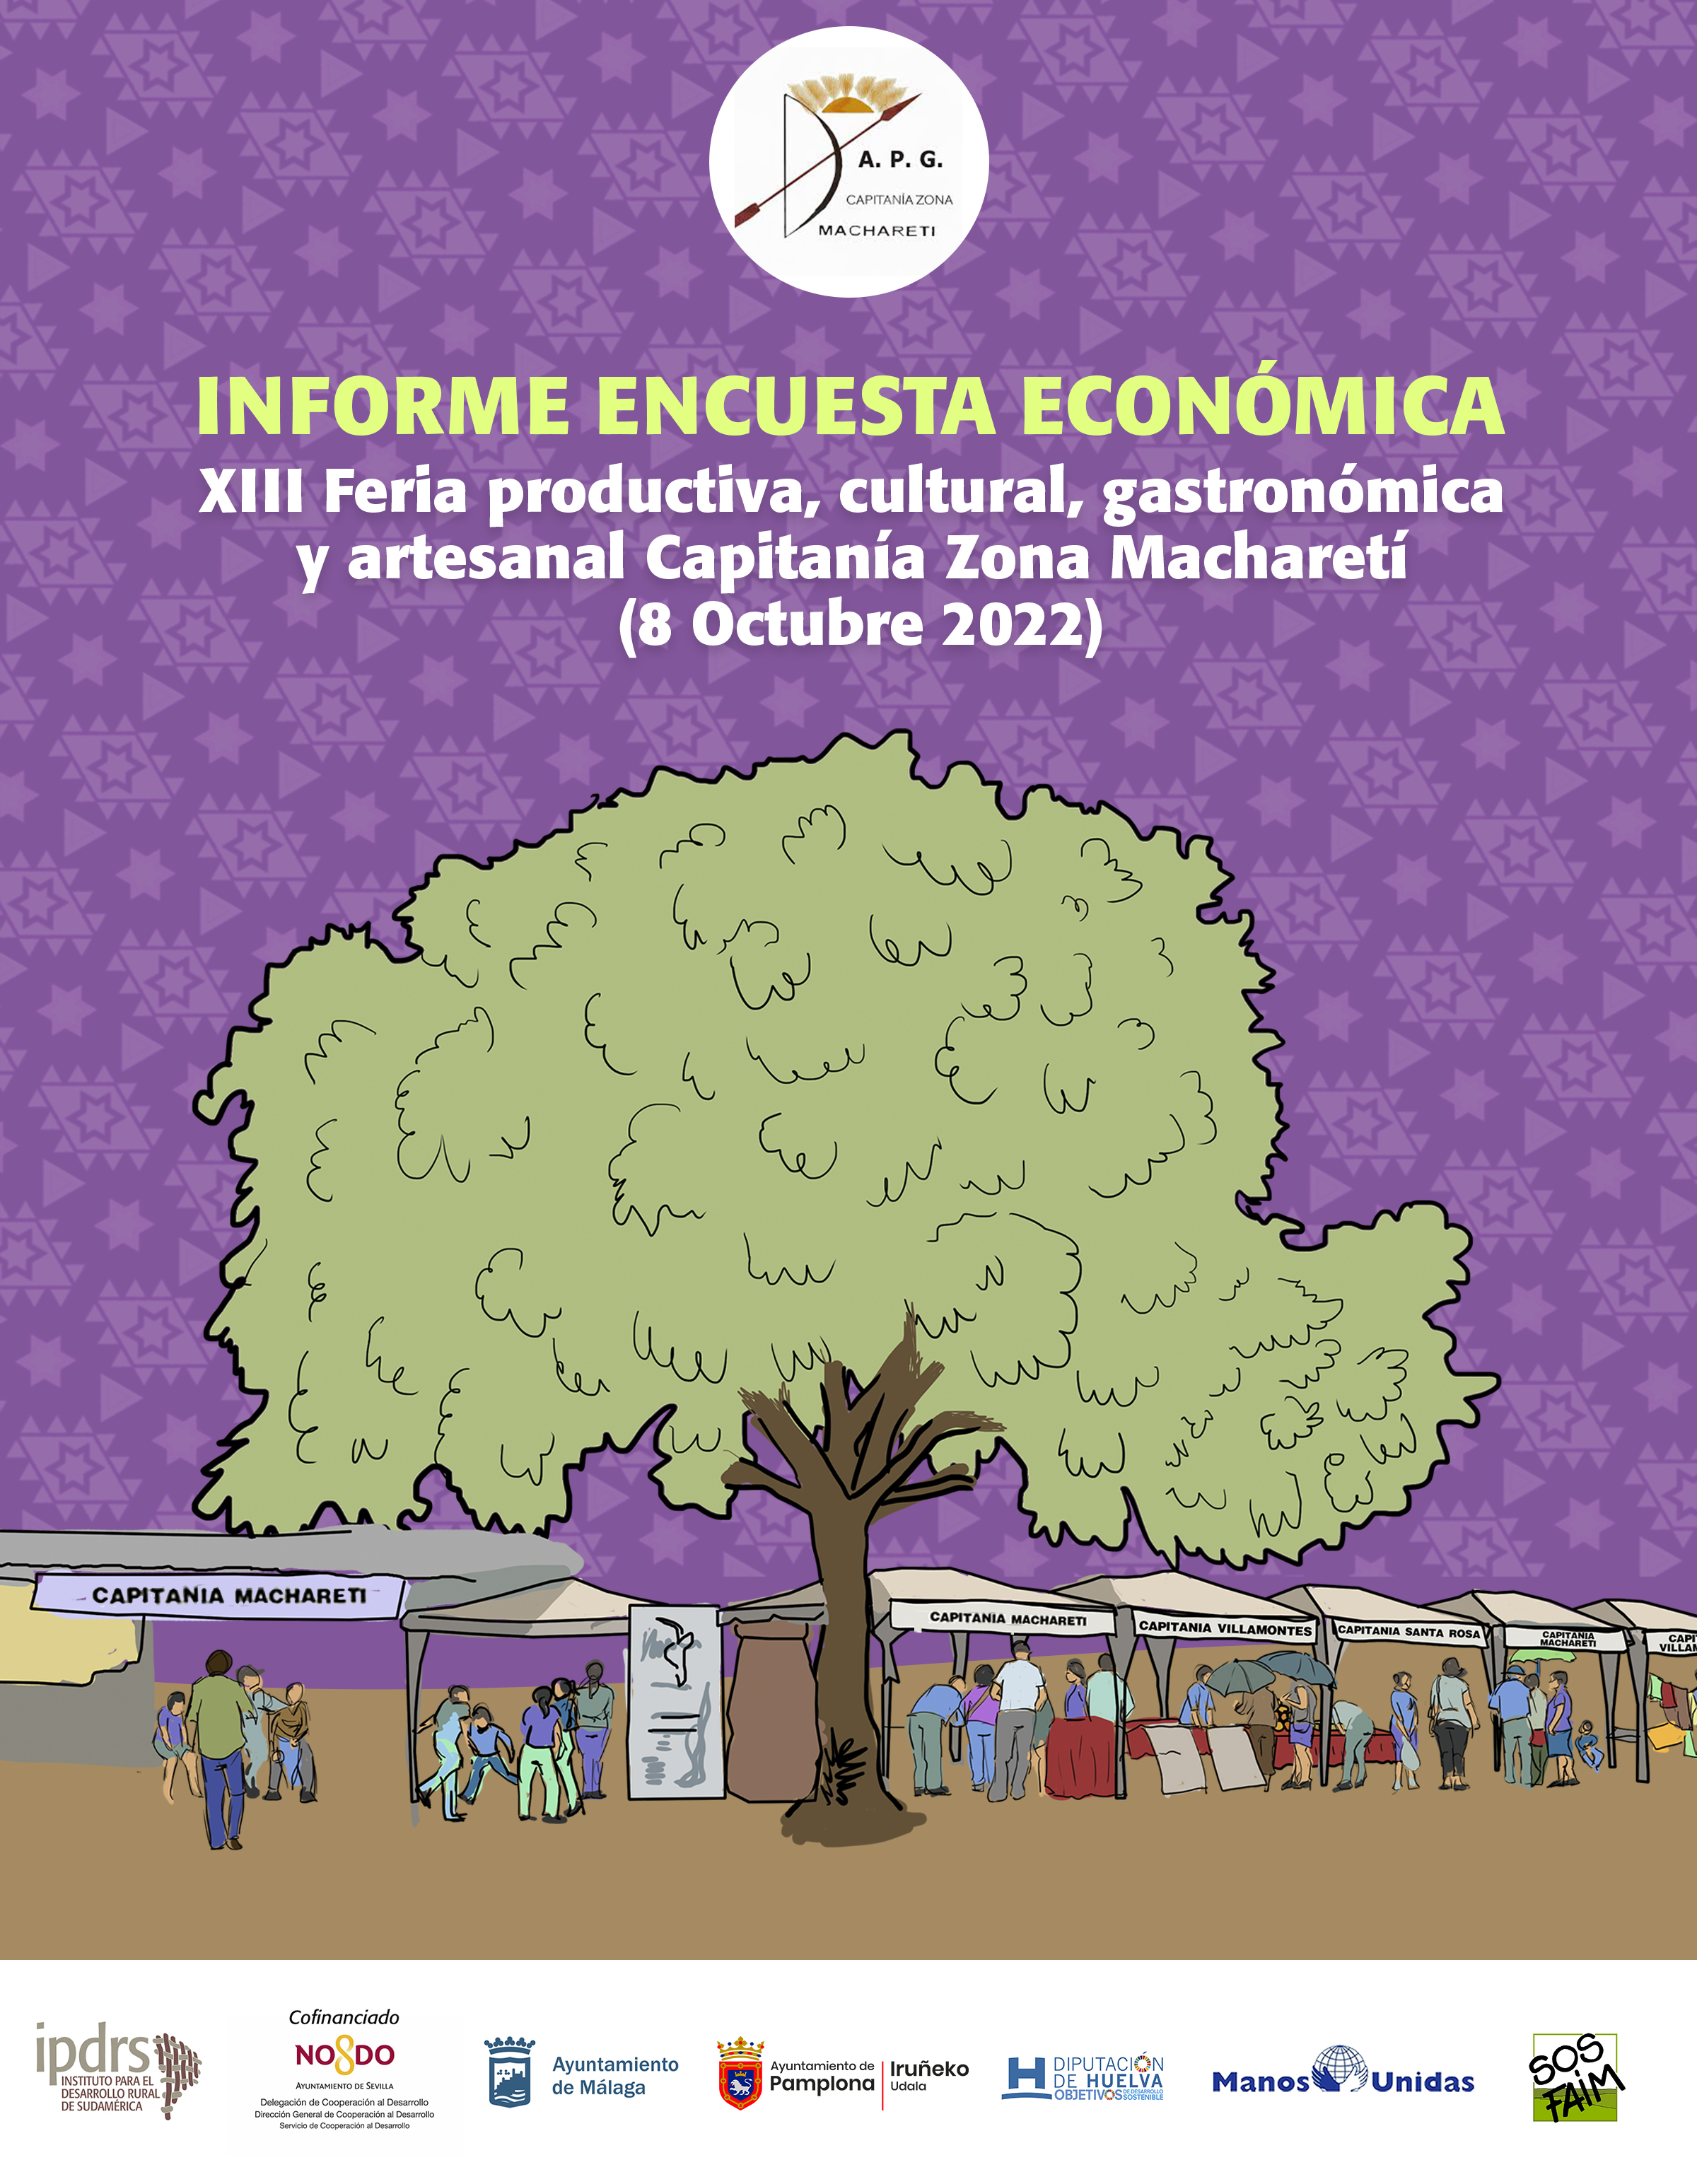 Informe encuesta económica: XIII Feria productiva, cultural gastronómica y artesanal Capitanía Zona Macharetí (8 octubre 2022)